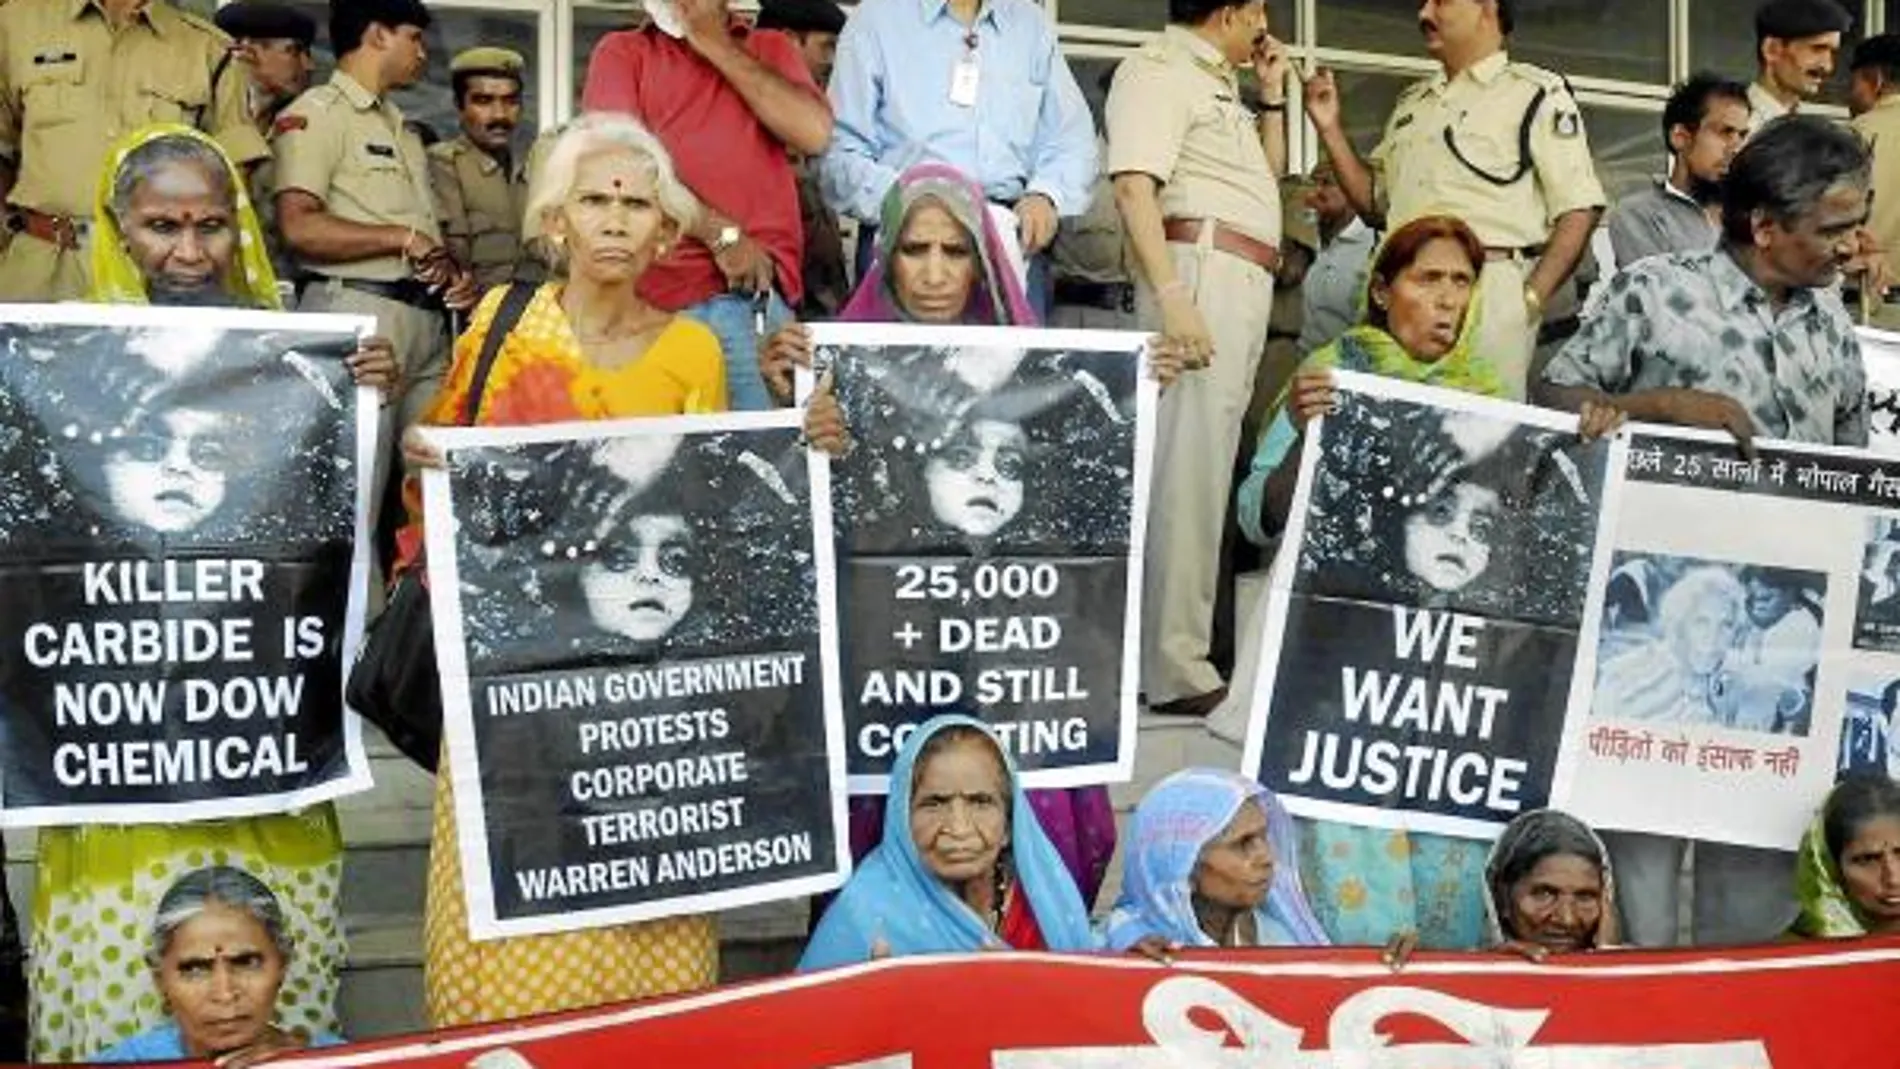 Supervivientes de la tragedia muestran pancartas exigiendo justicia en las puertas del juzgado, en Bhopal, India